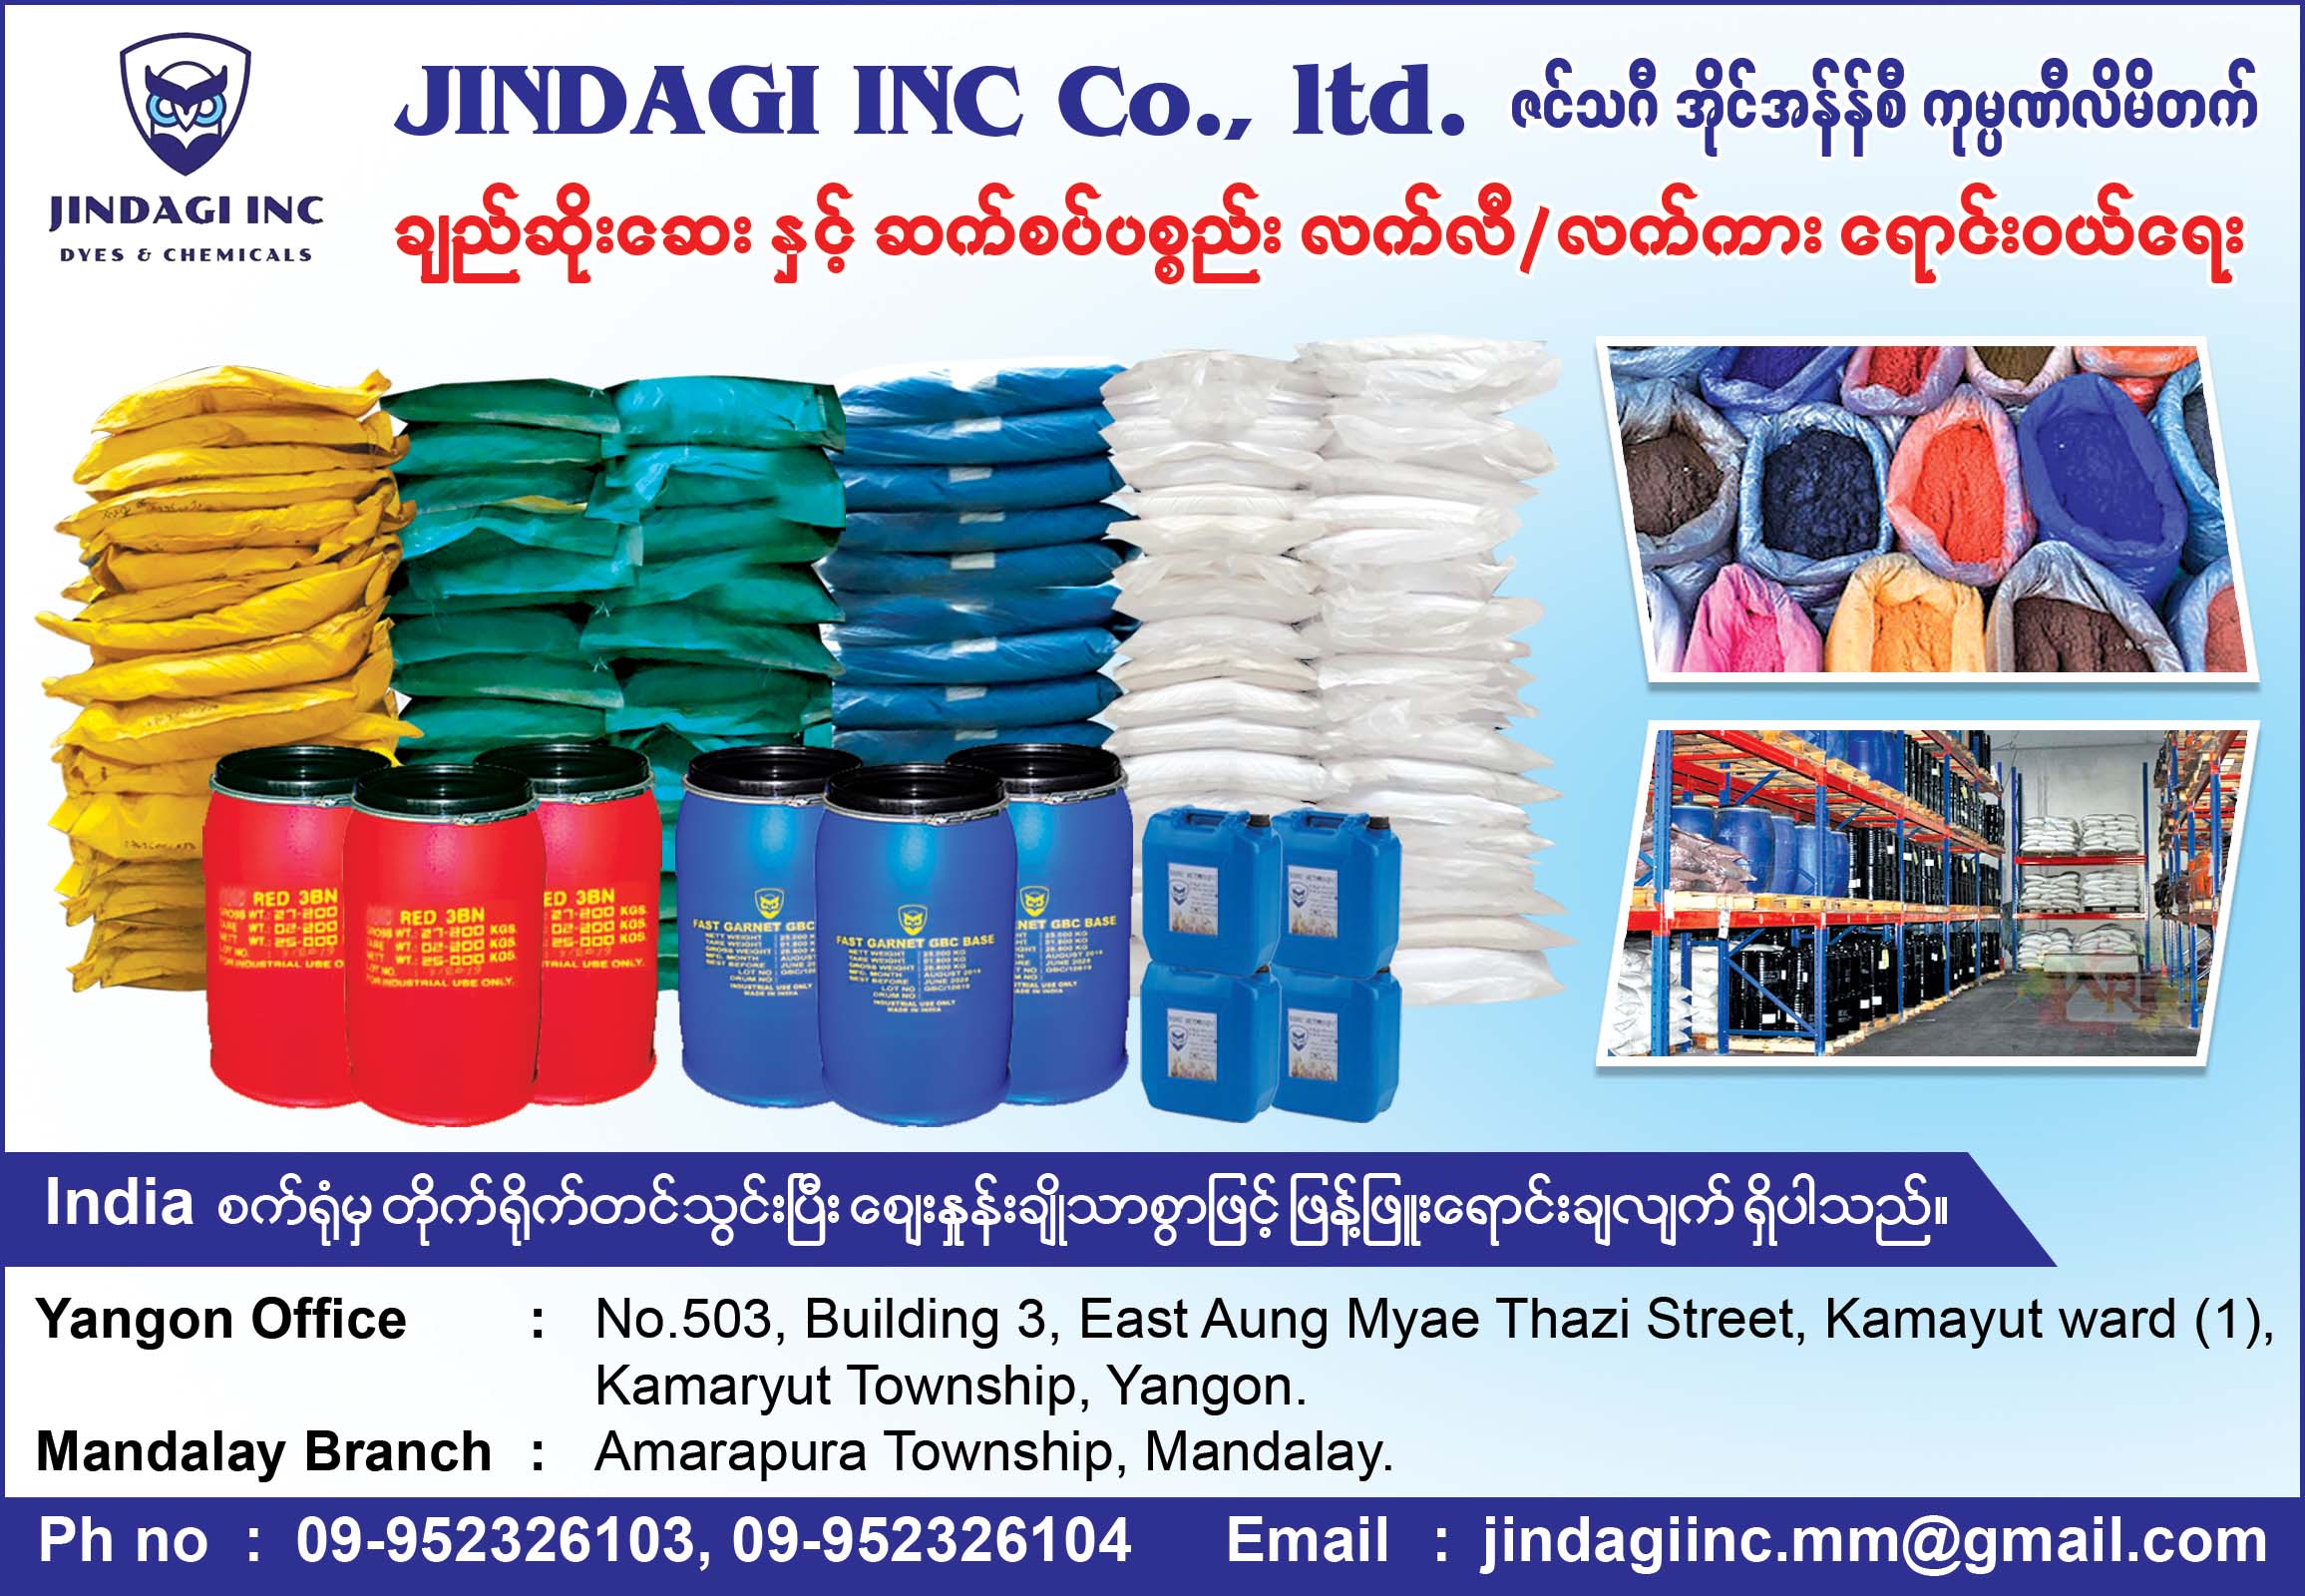 Jindagi Inc Co., Ltd.